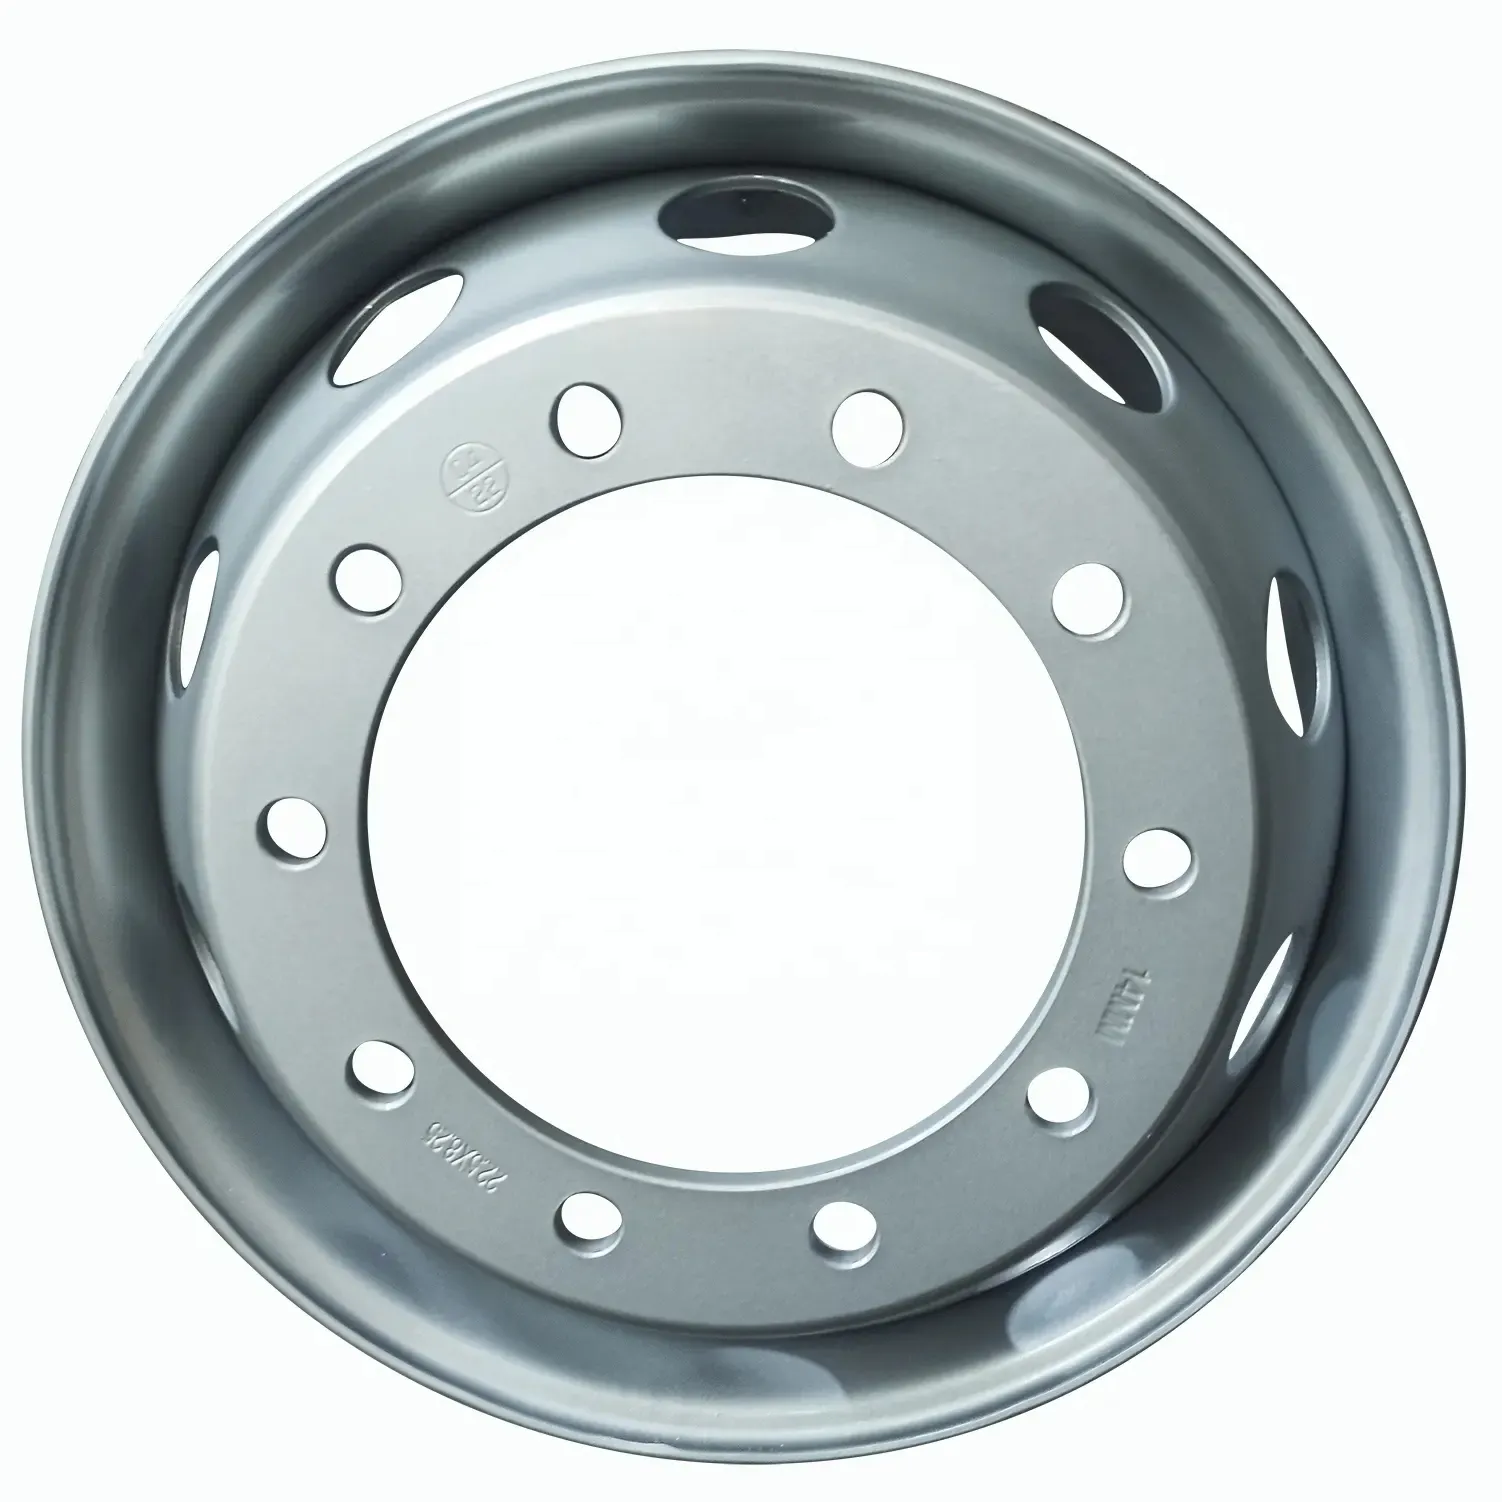 7.5-20 heavy truck steel tubeless wheel rim 22.5x8.25 11r 22.5 tire